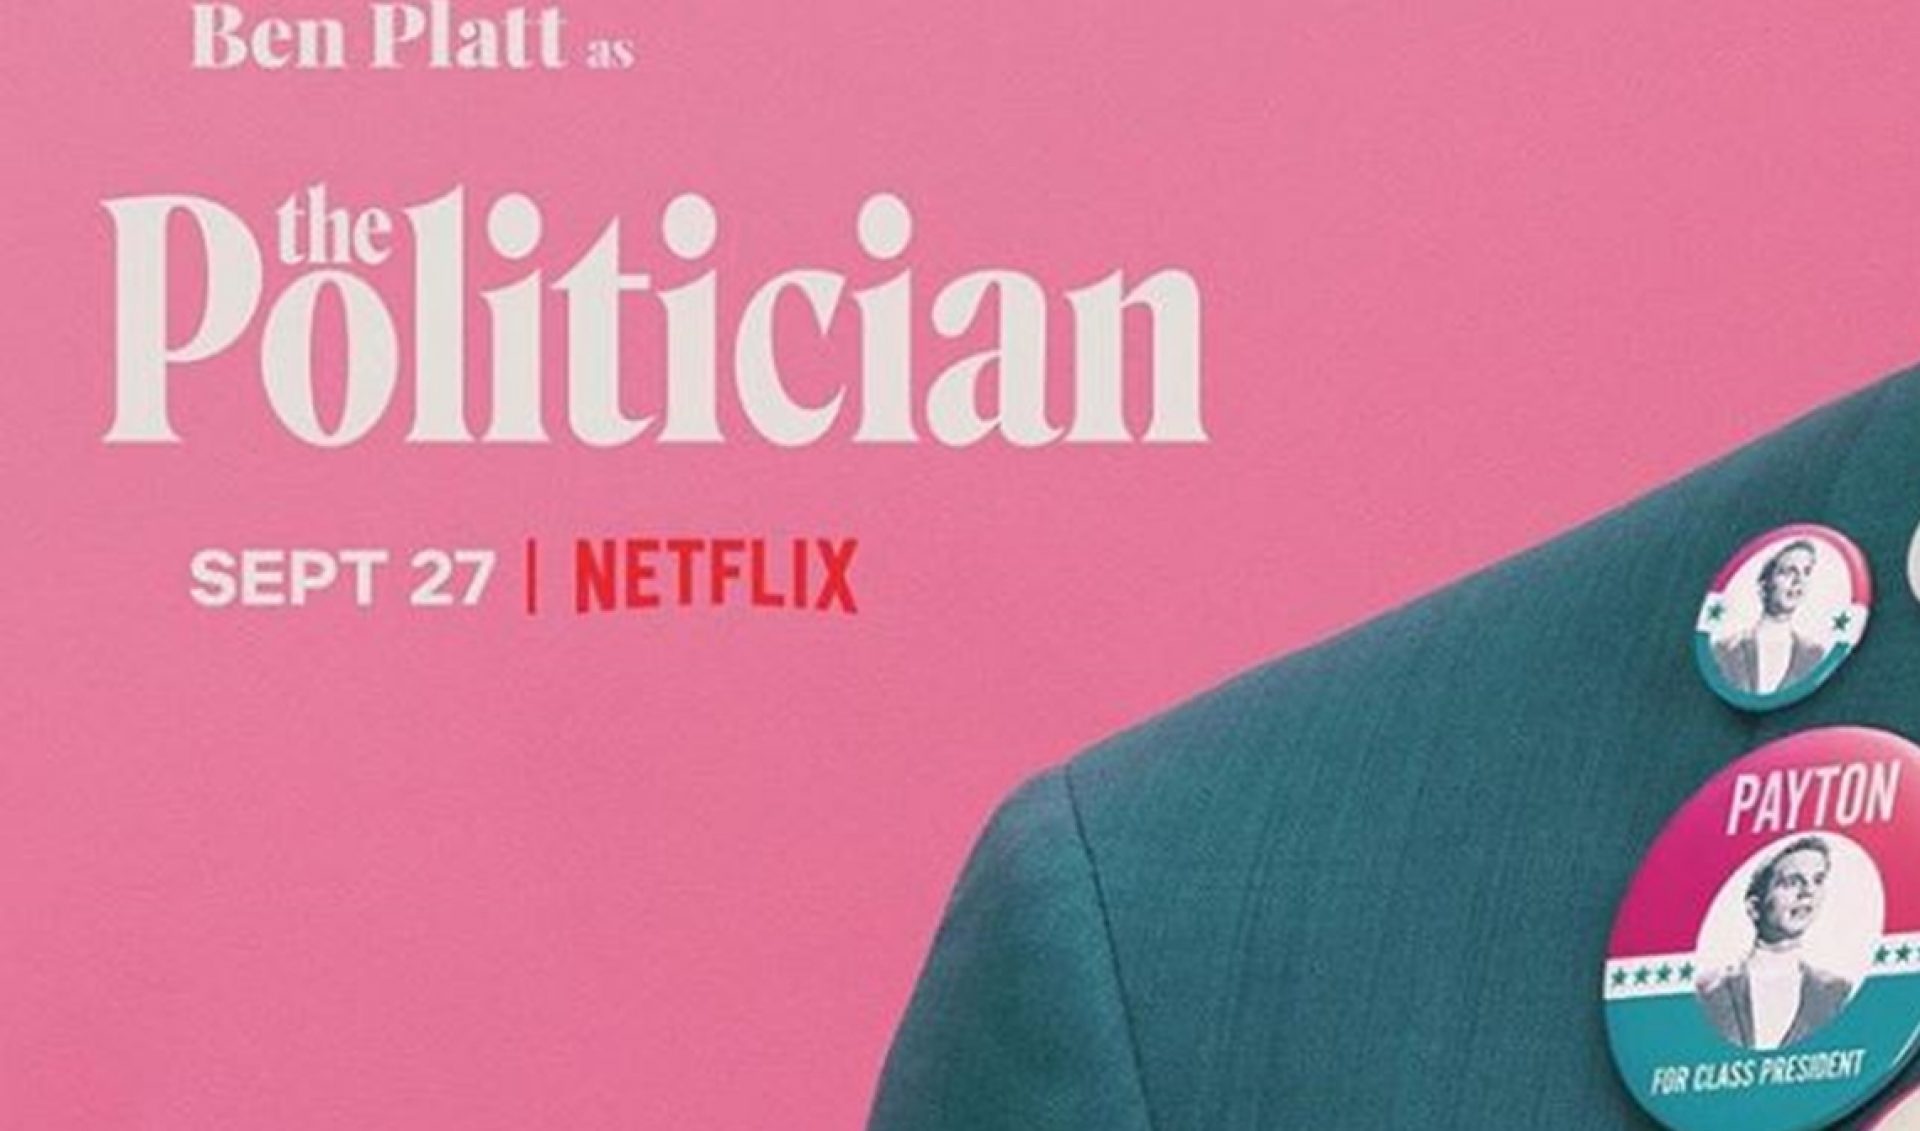 Ryan Murphy’s First Netflix Series, ‘The Politician’, Set To Run On Sept. 27